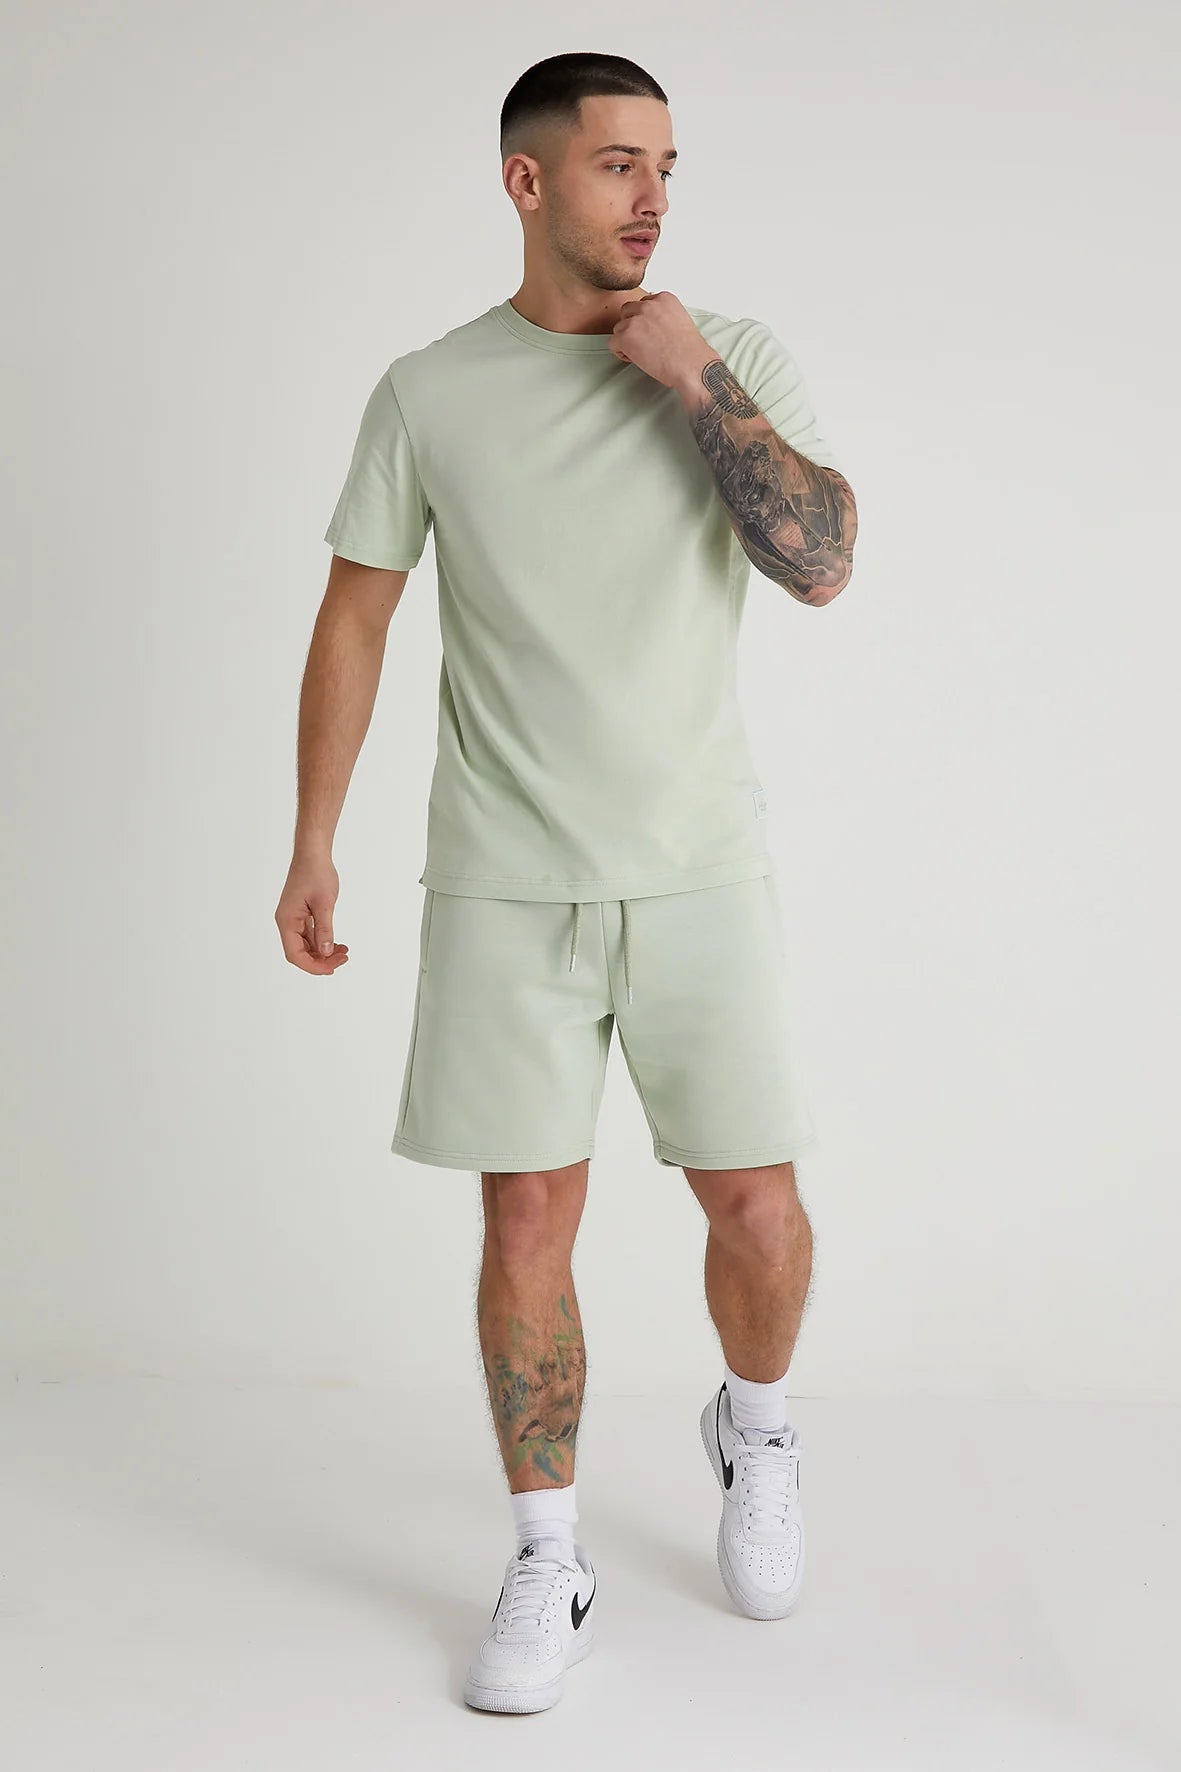 DML Aston Crew Neck Tee in ARTICHOKE Mint Green - Raw Menswear